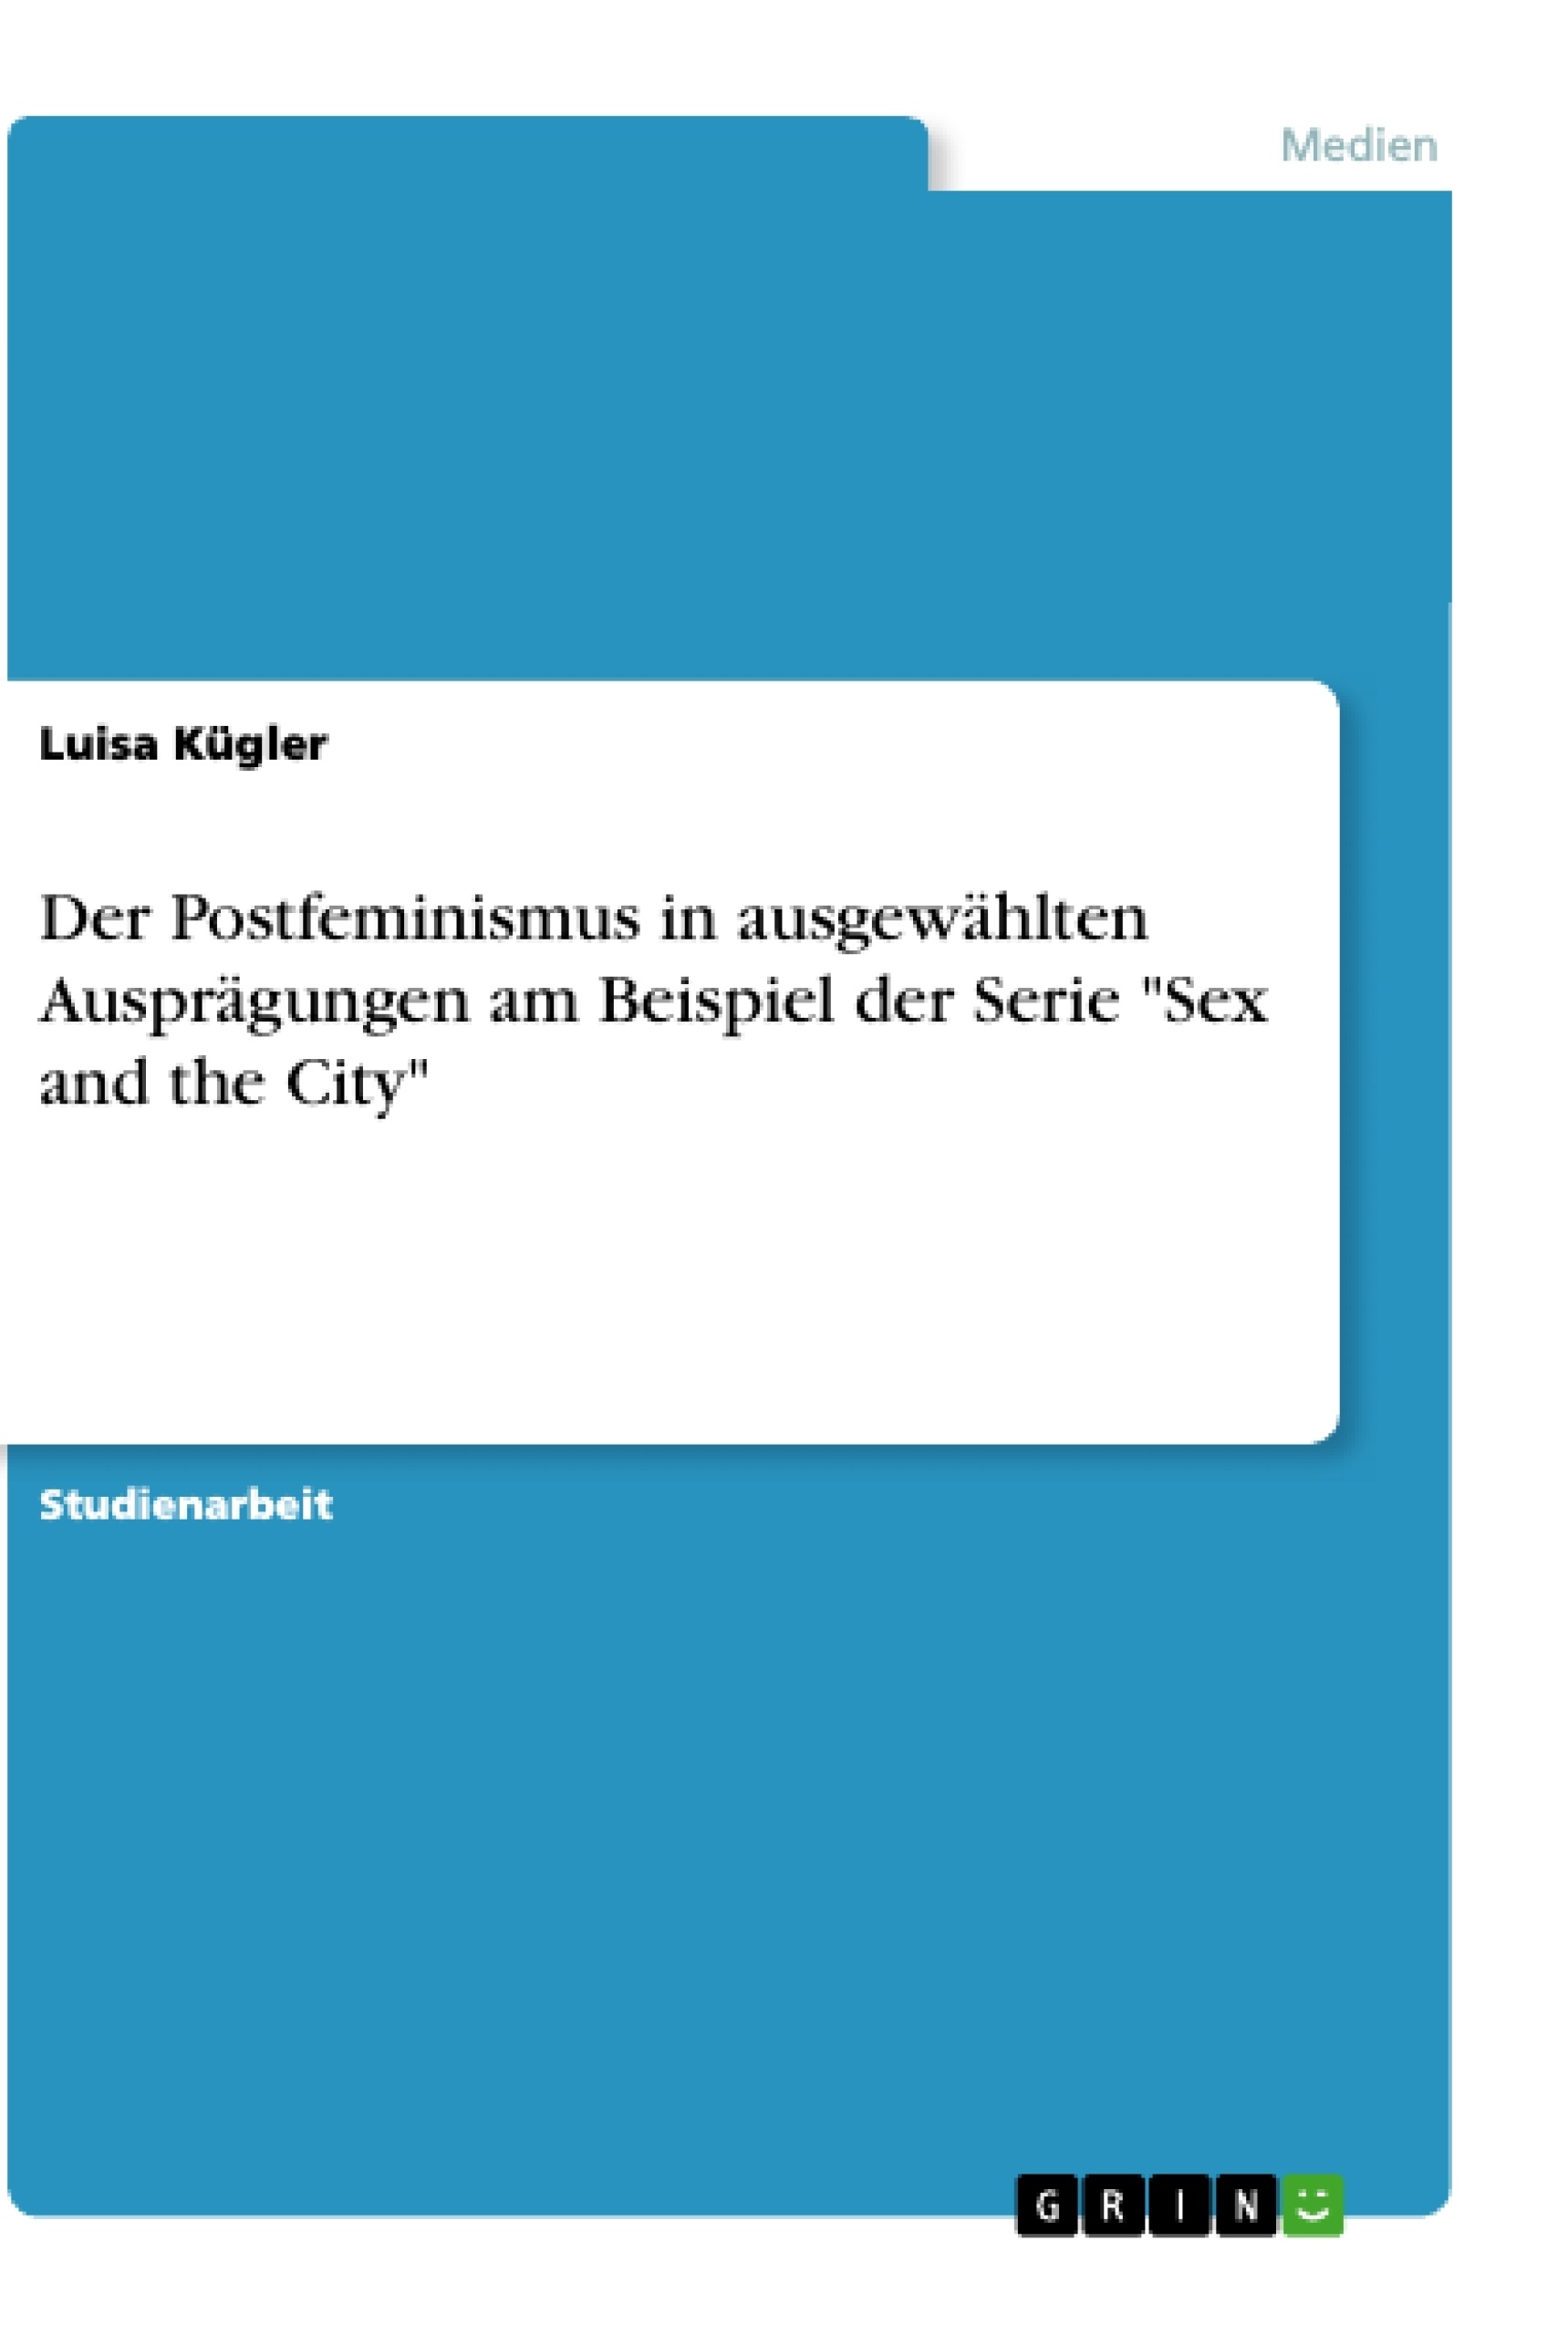 Titre: Der Postfeminismus in ausgewählten Ausprägungen am Beispiel der Serie "Sex and the City"